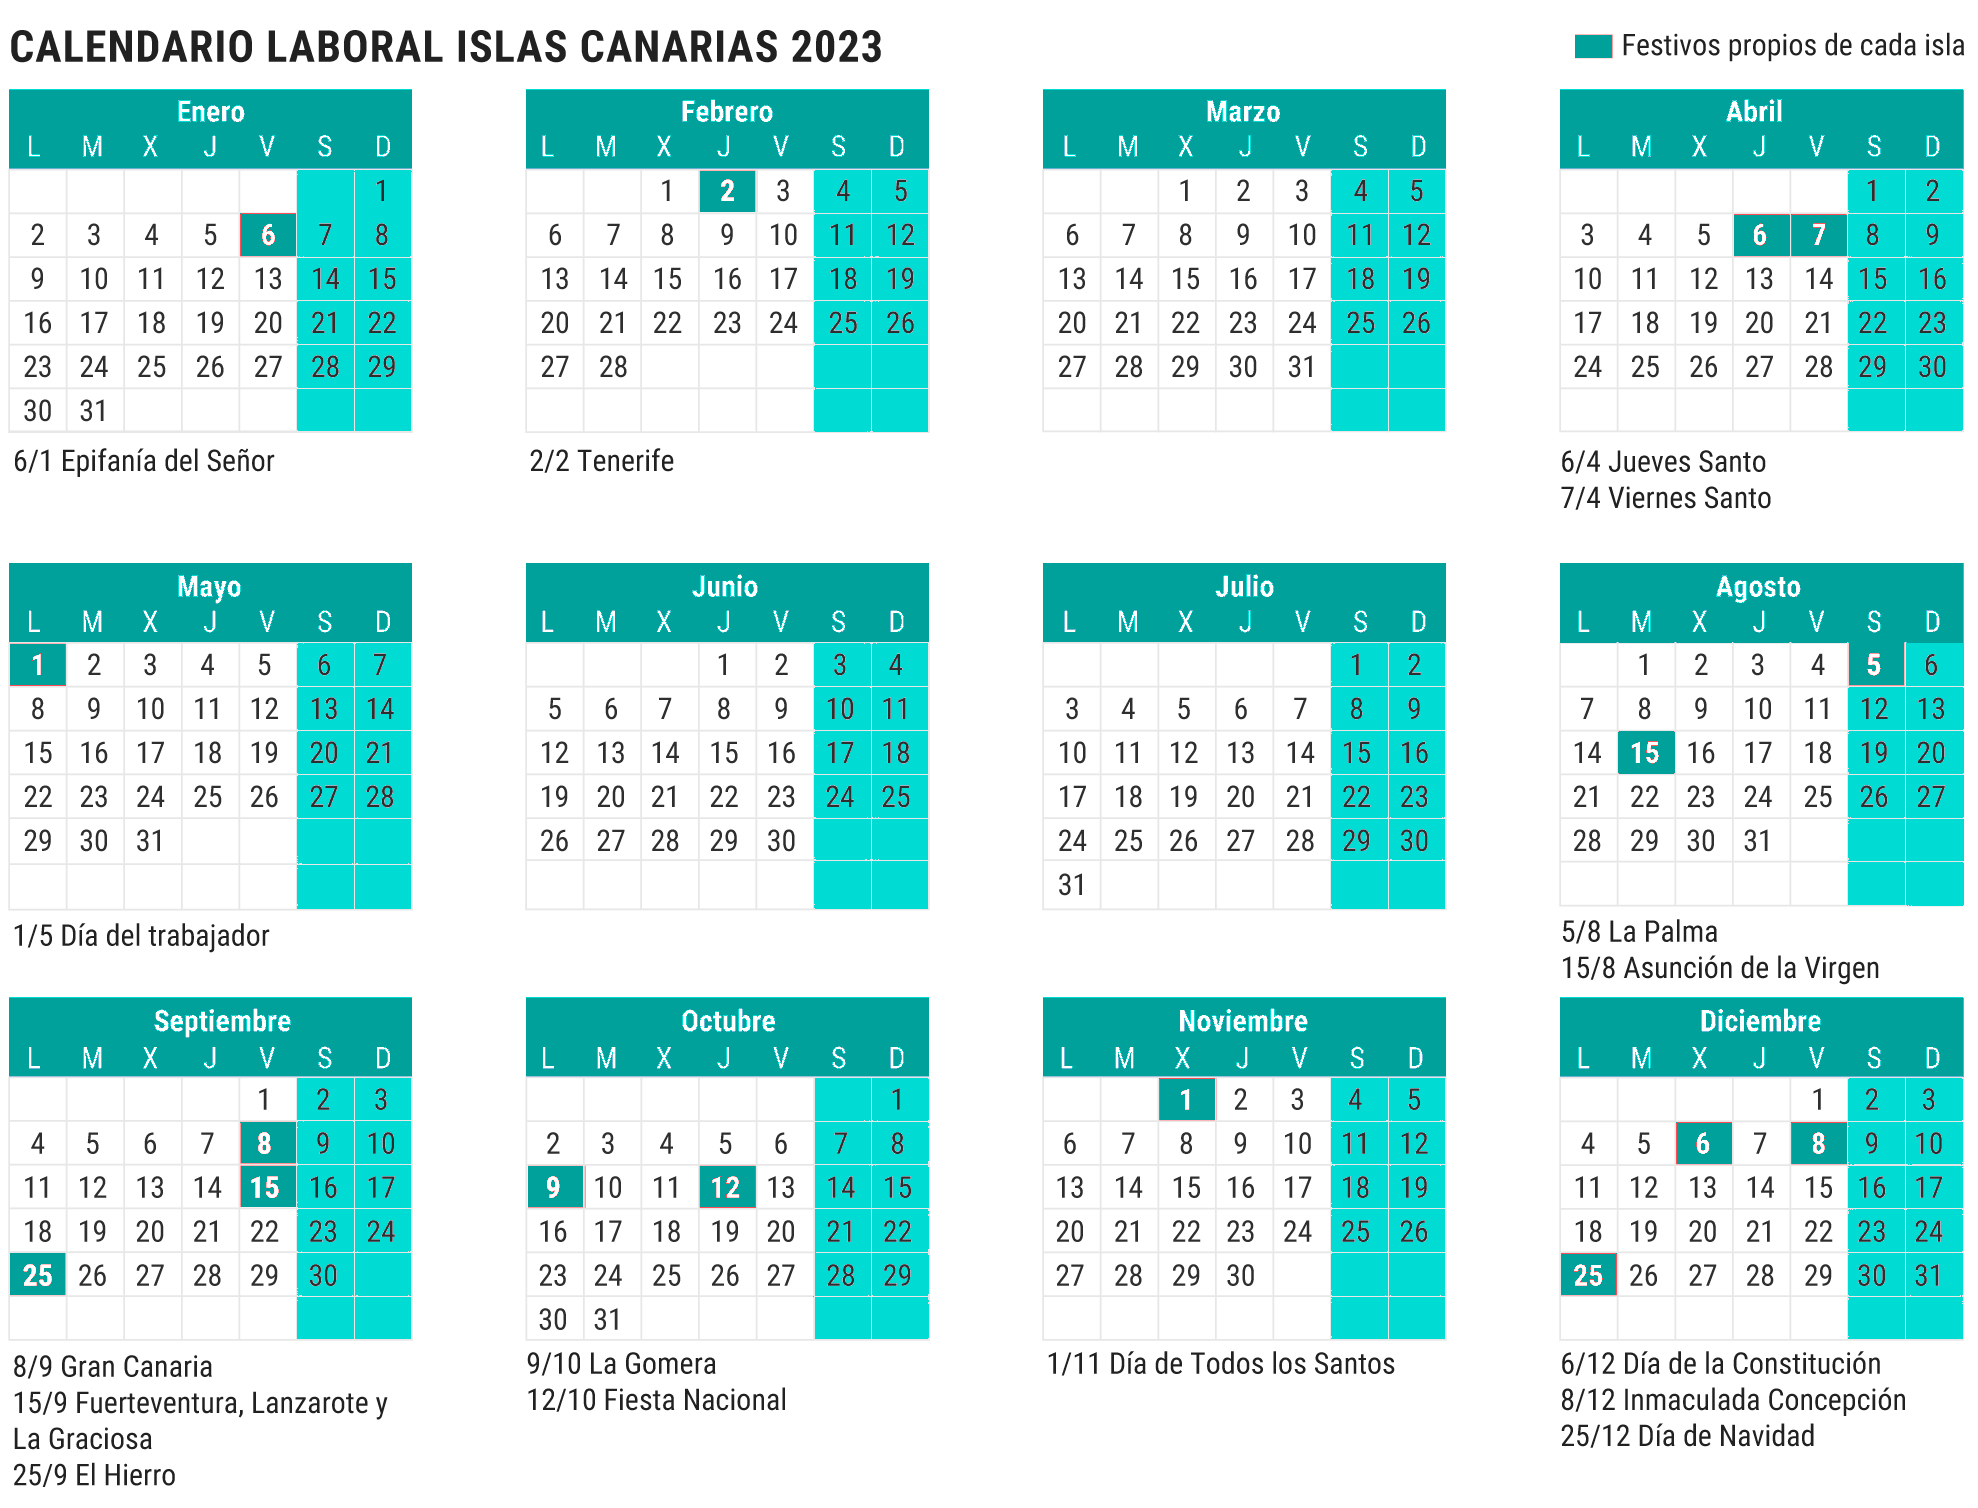 Calendario laboral islas canarias 2023